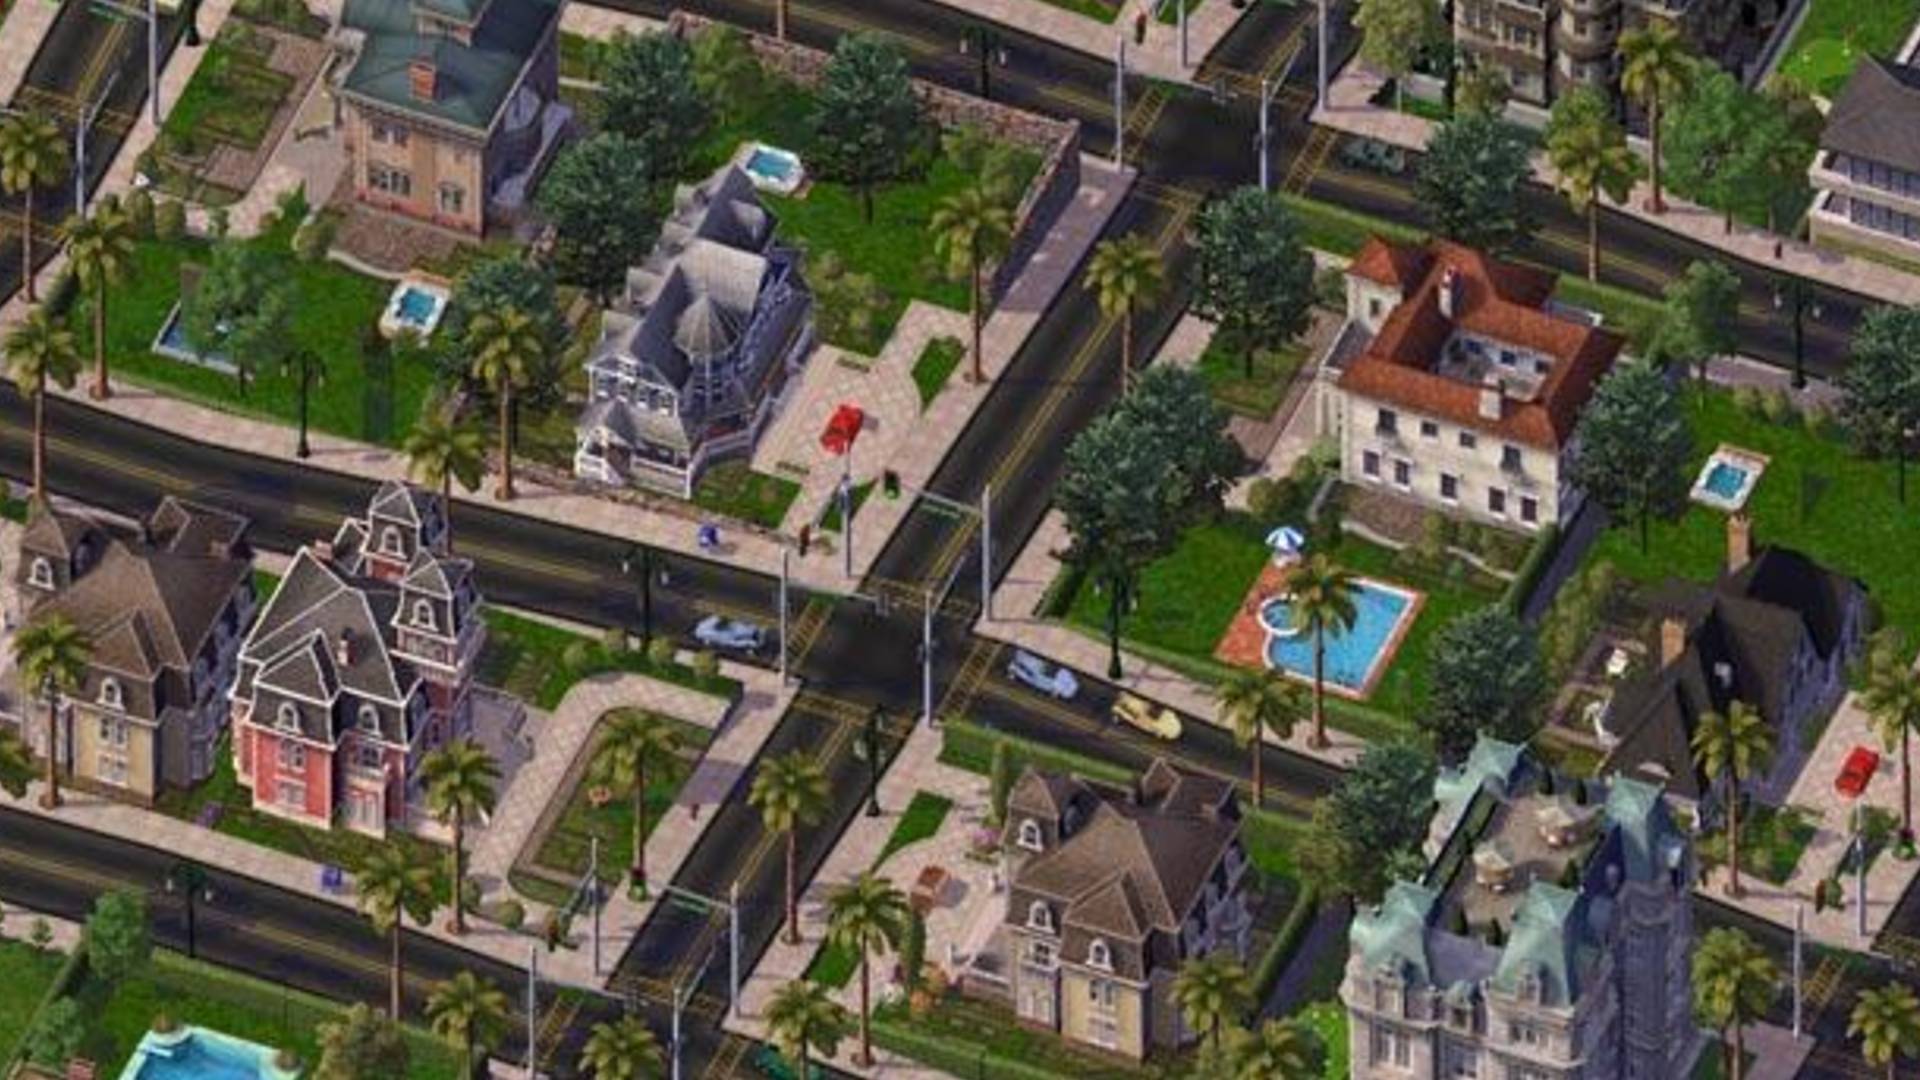 Melhores jogos de construção da cidade: SimCity 4. A imagem mostra uma paisagem suburbana rica